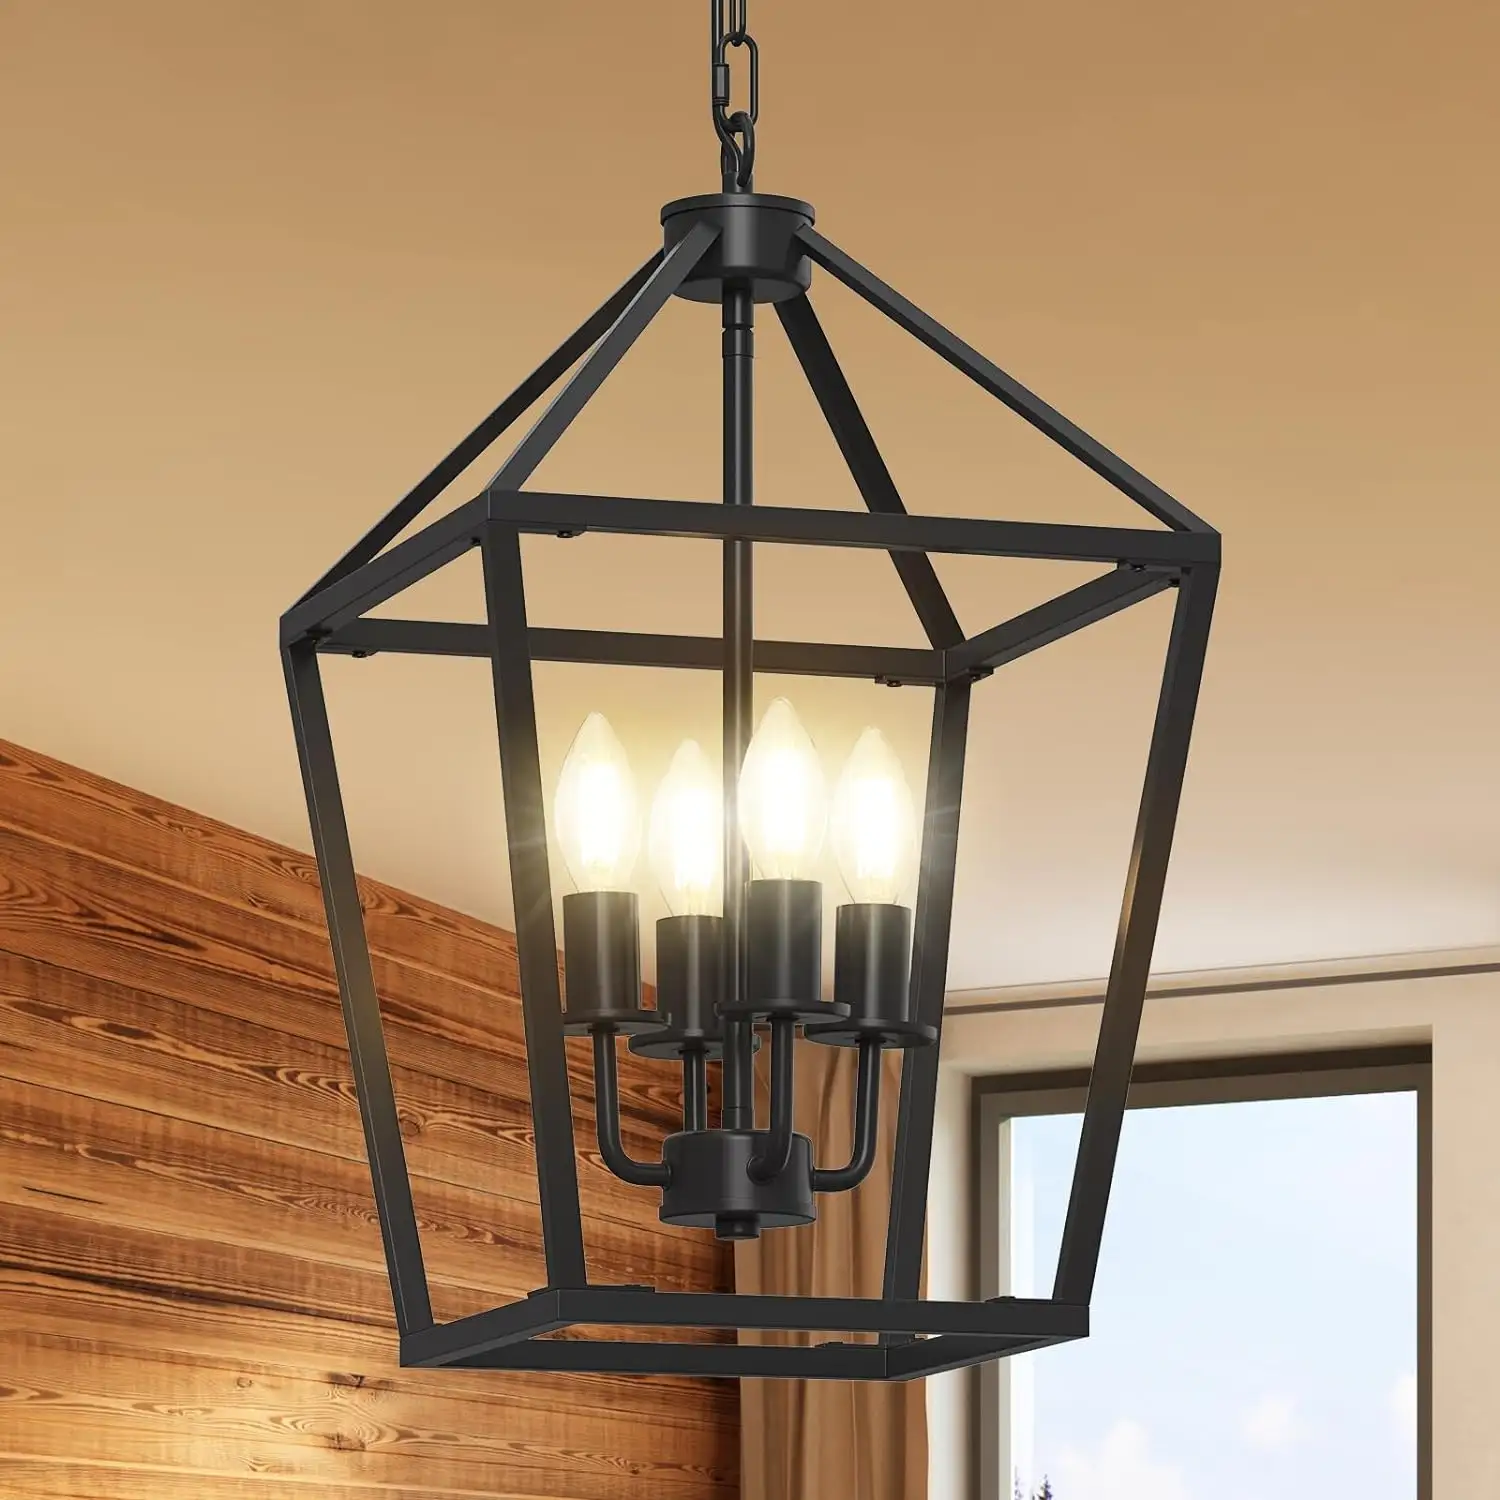 Retro Öl-Rieblatter Bronze Laterne Metallstecker im Bauernhaus Einrichtung schwarz LED hängende Anhänger Esszimmerlampe